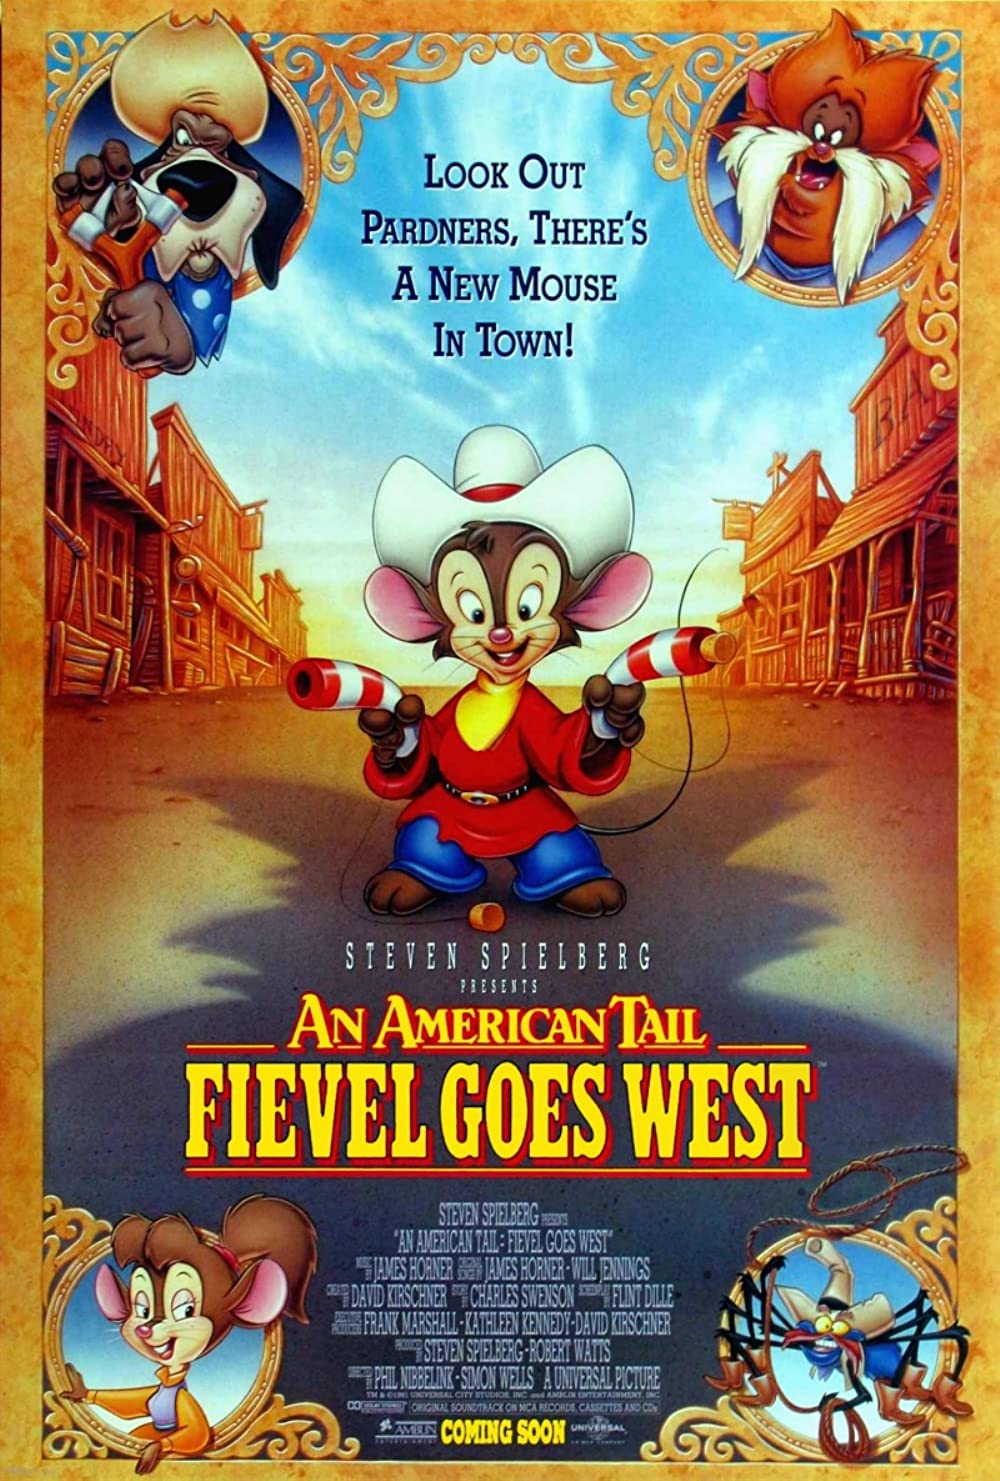 Filmbeschreibung zu An American Tail: Fievel Goes West